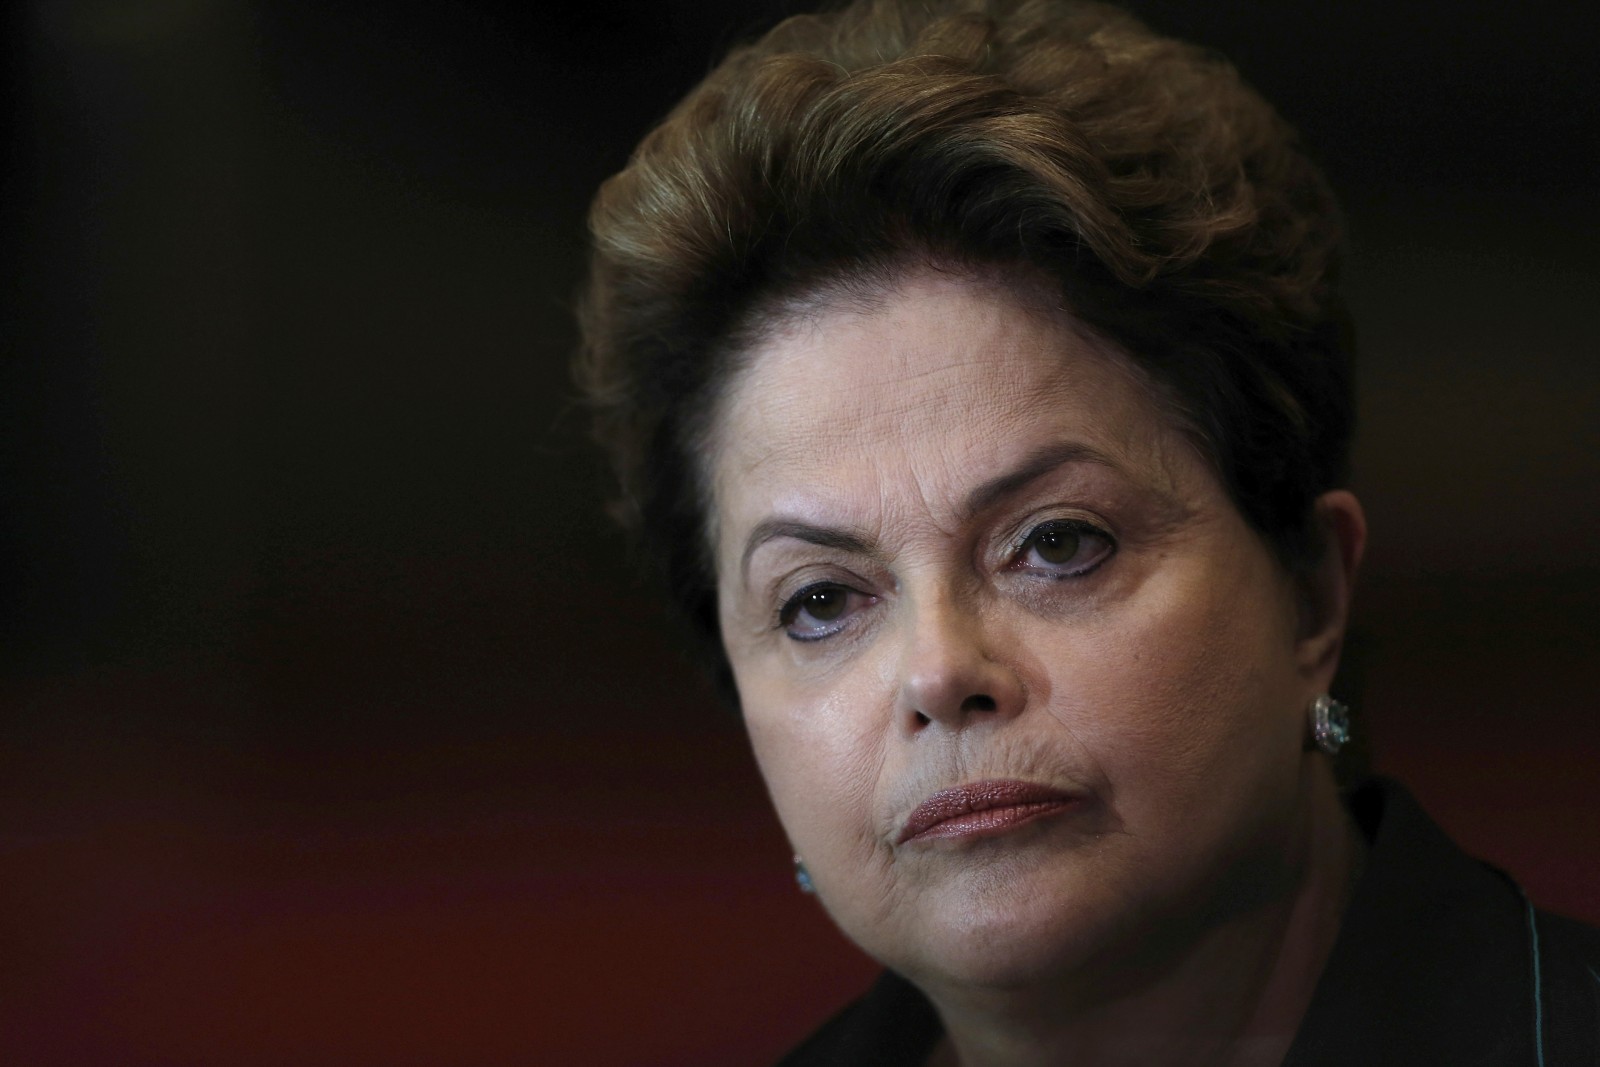 דילמה רוסף, נשיאת ברזיל המושהית שמועמדת להדחה. צילום: סוכנות AP